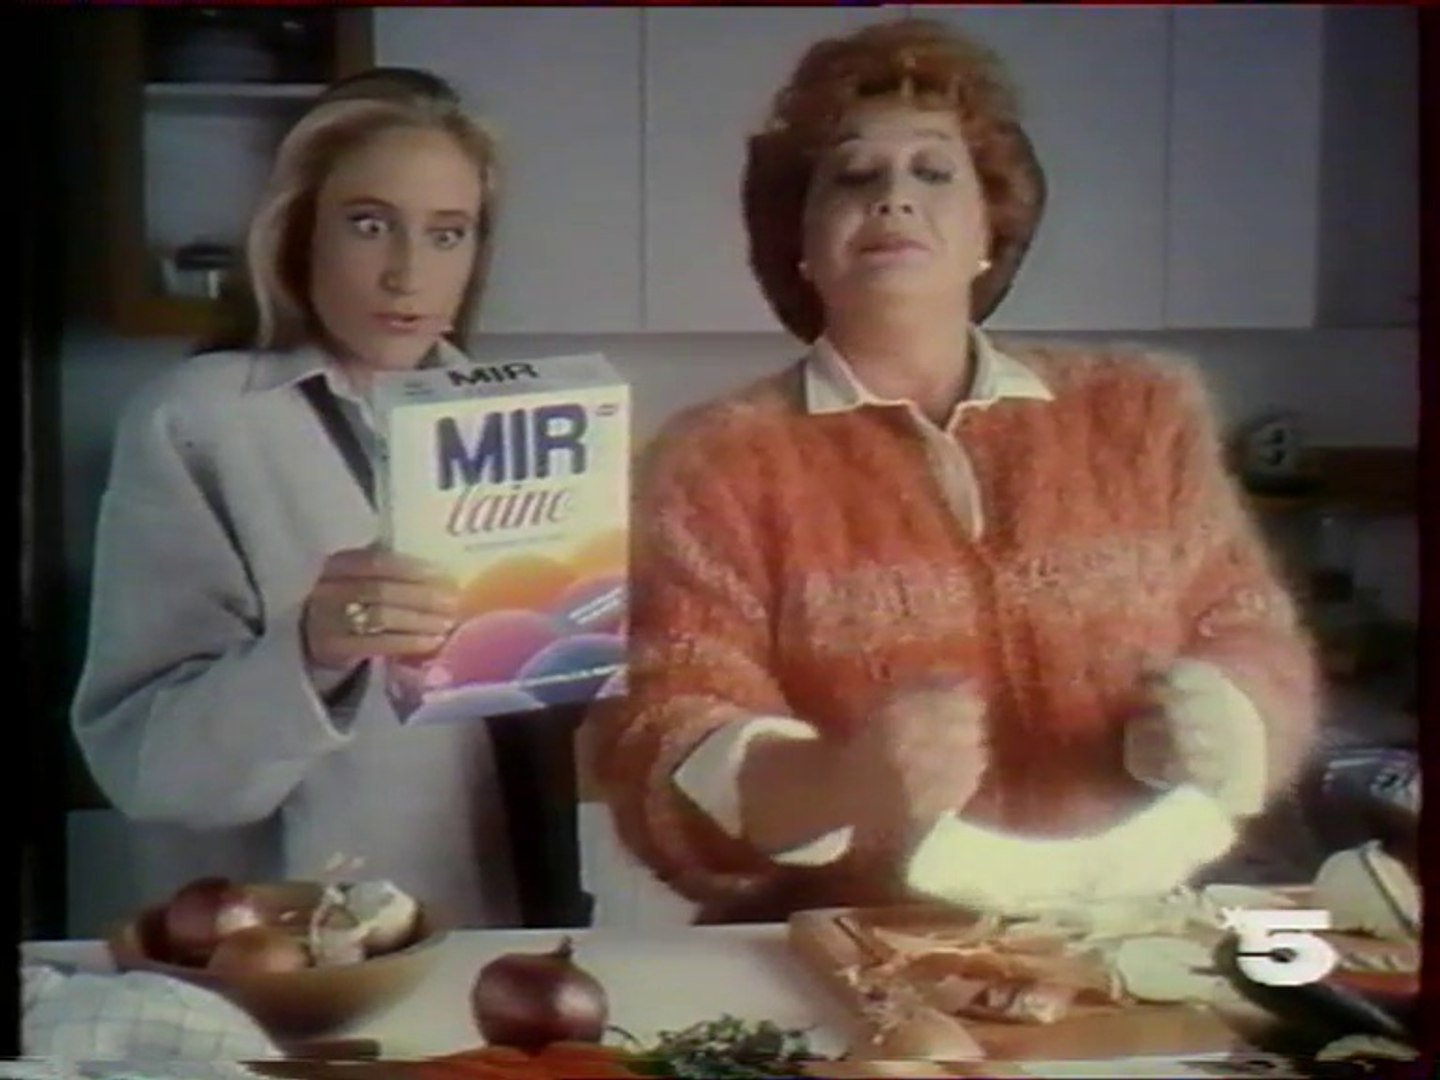 La 5 - 15 Février 1988 - Publicités - Vidéo Dailymotion